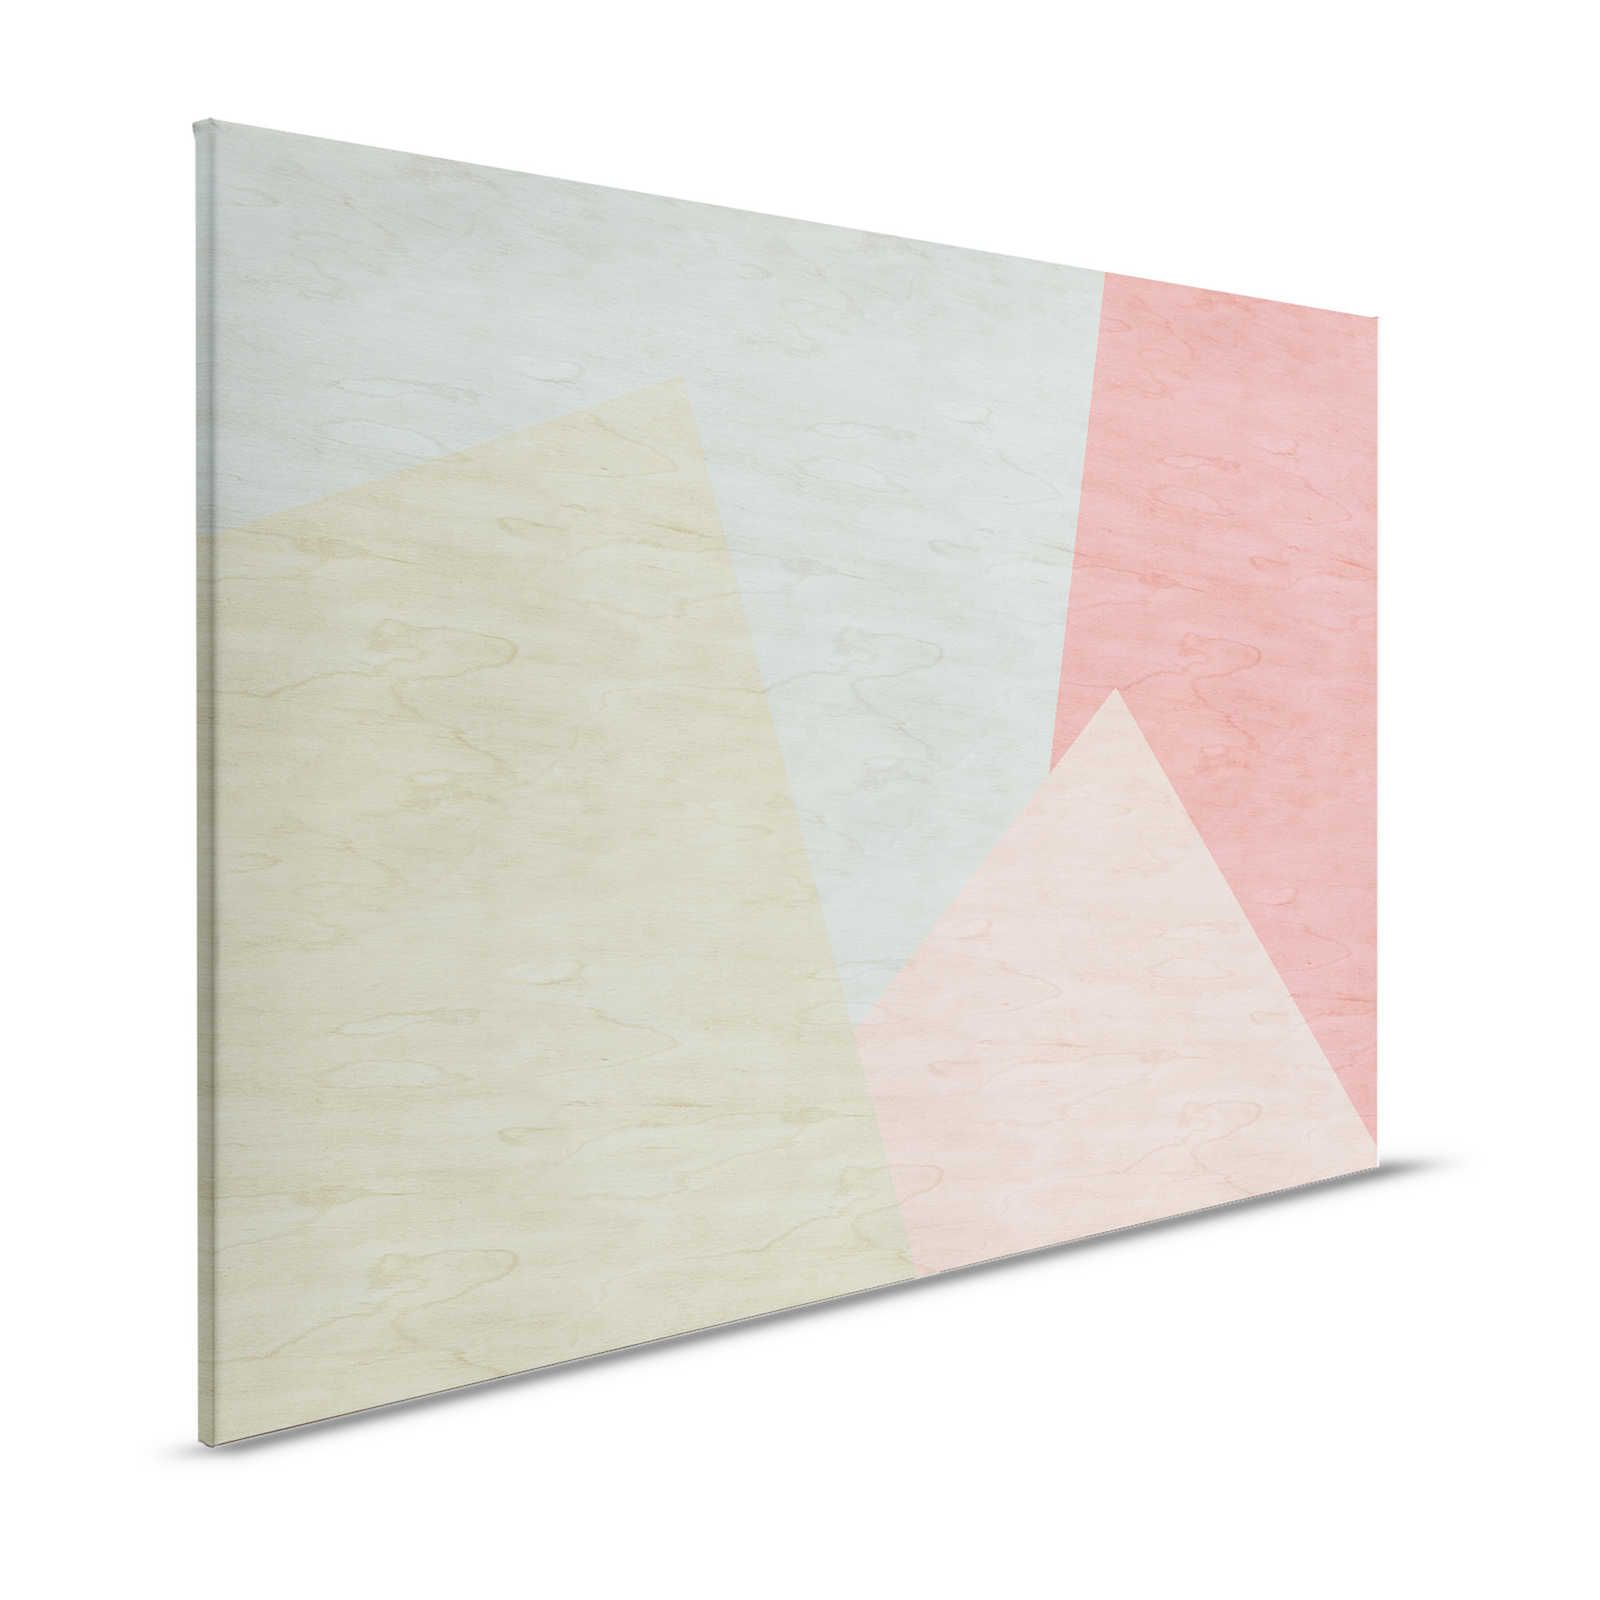 Inaly 2 - Abstract, kleurrijk canvas schilderij in multiplex look - 1.20 m x 0.80 m
